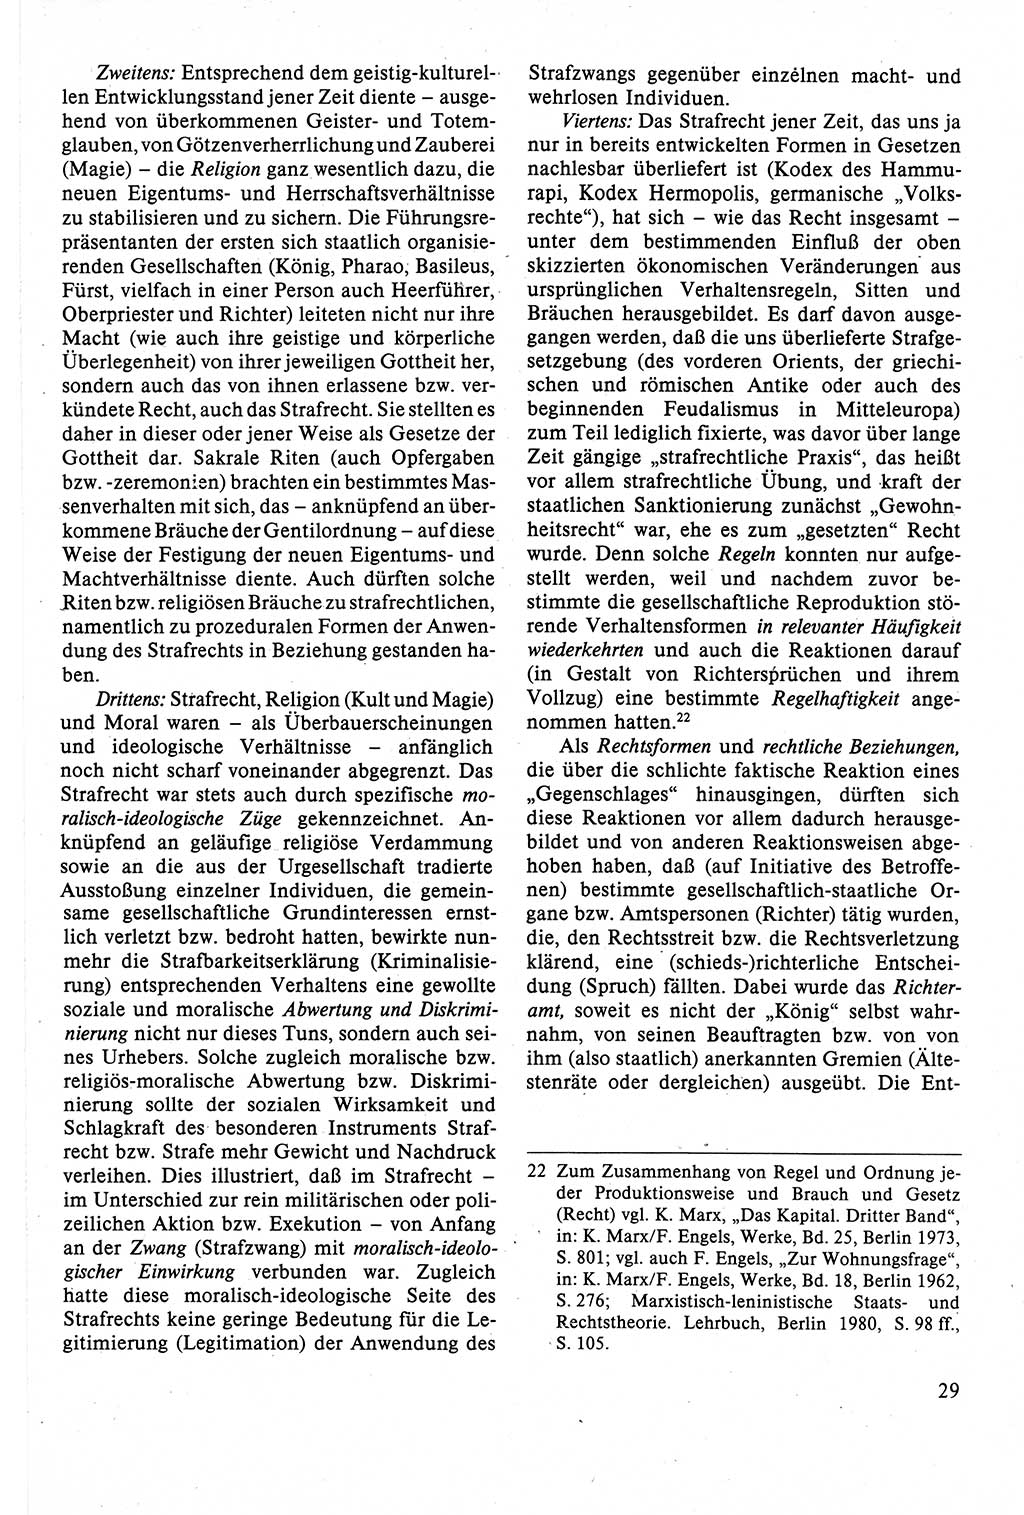 Strafrecht der DDR (Deutsche Demokratische Republik), Lehrbuch 1988, Seite 29 (Strafr. DDR Lb. 1988, S. 29)